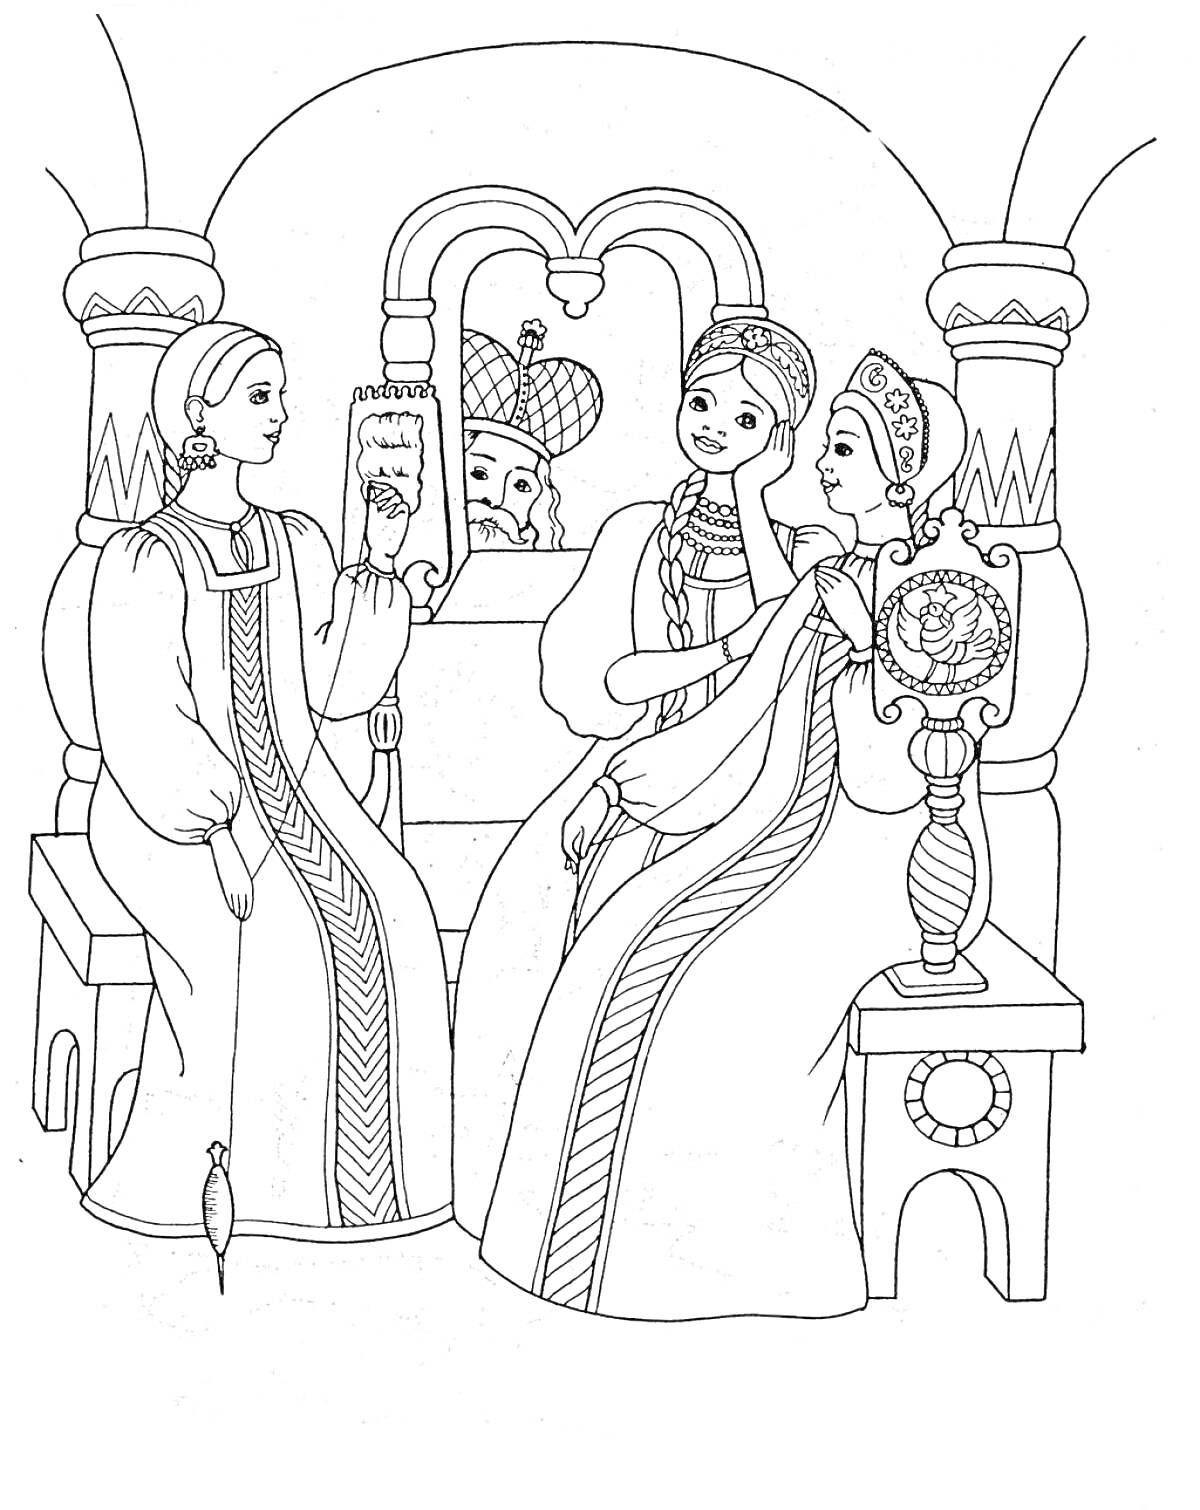 Раскраска Три женщины, сидящие на лавке, одна читает, позади выглядывает царь.